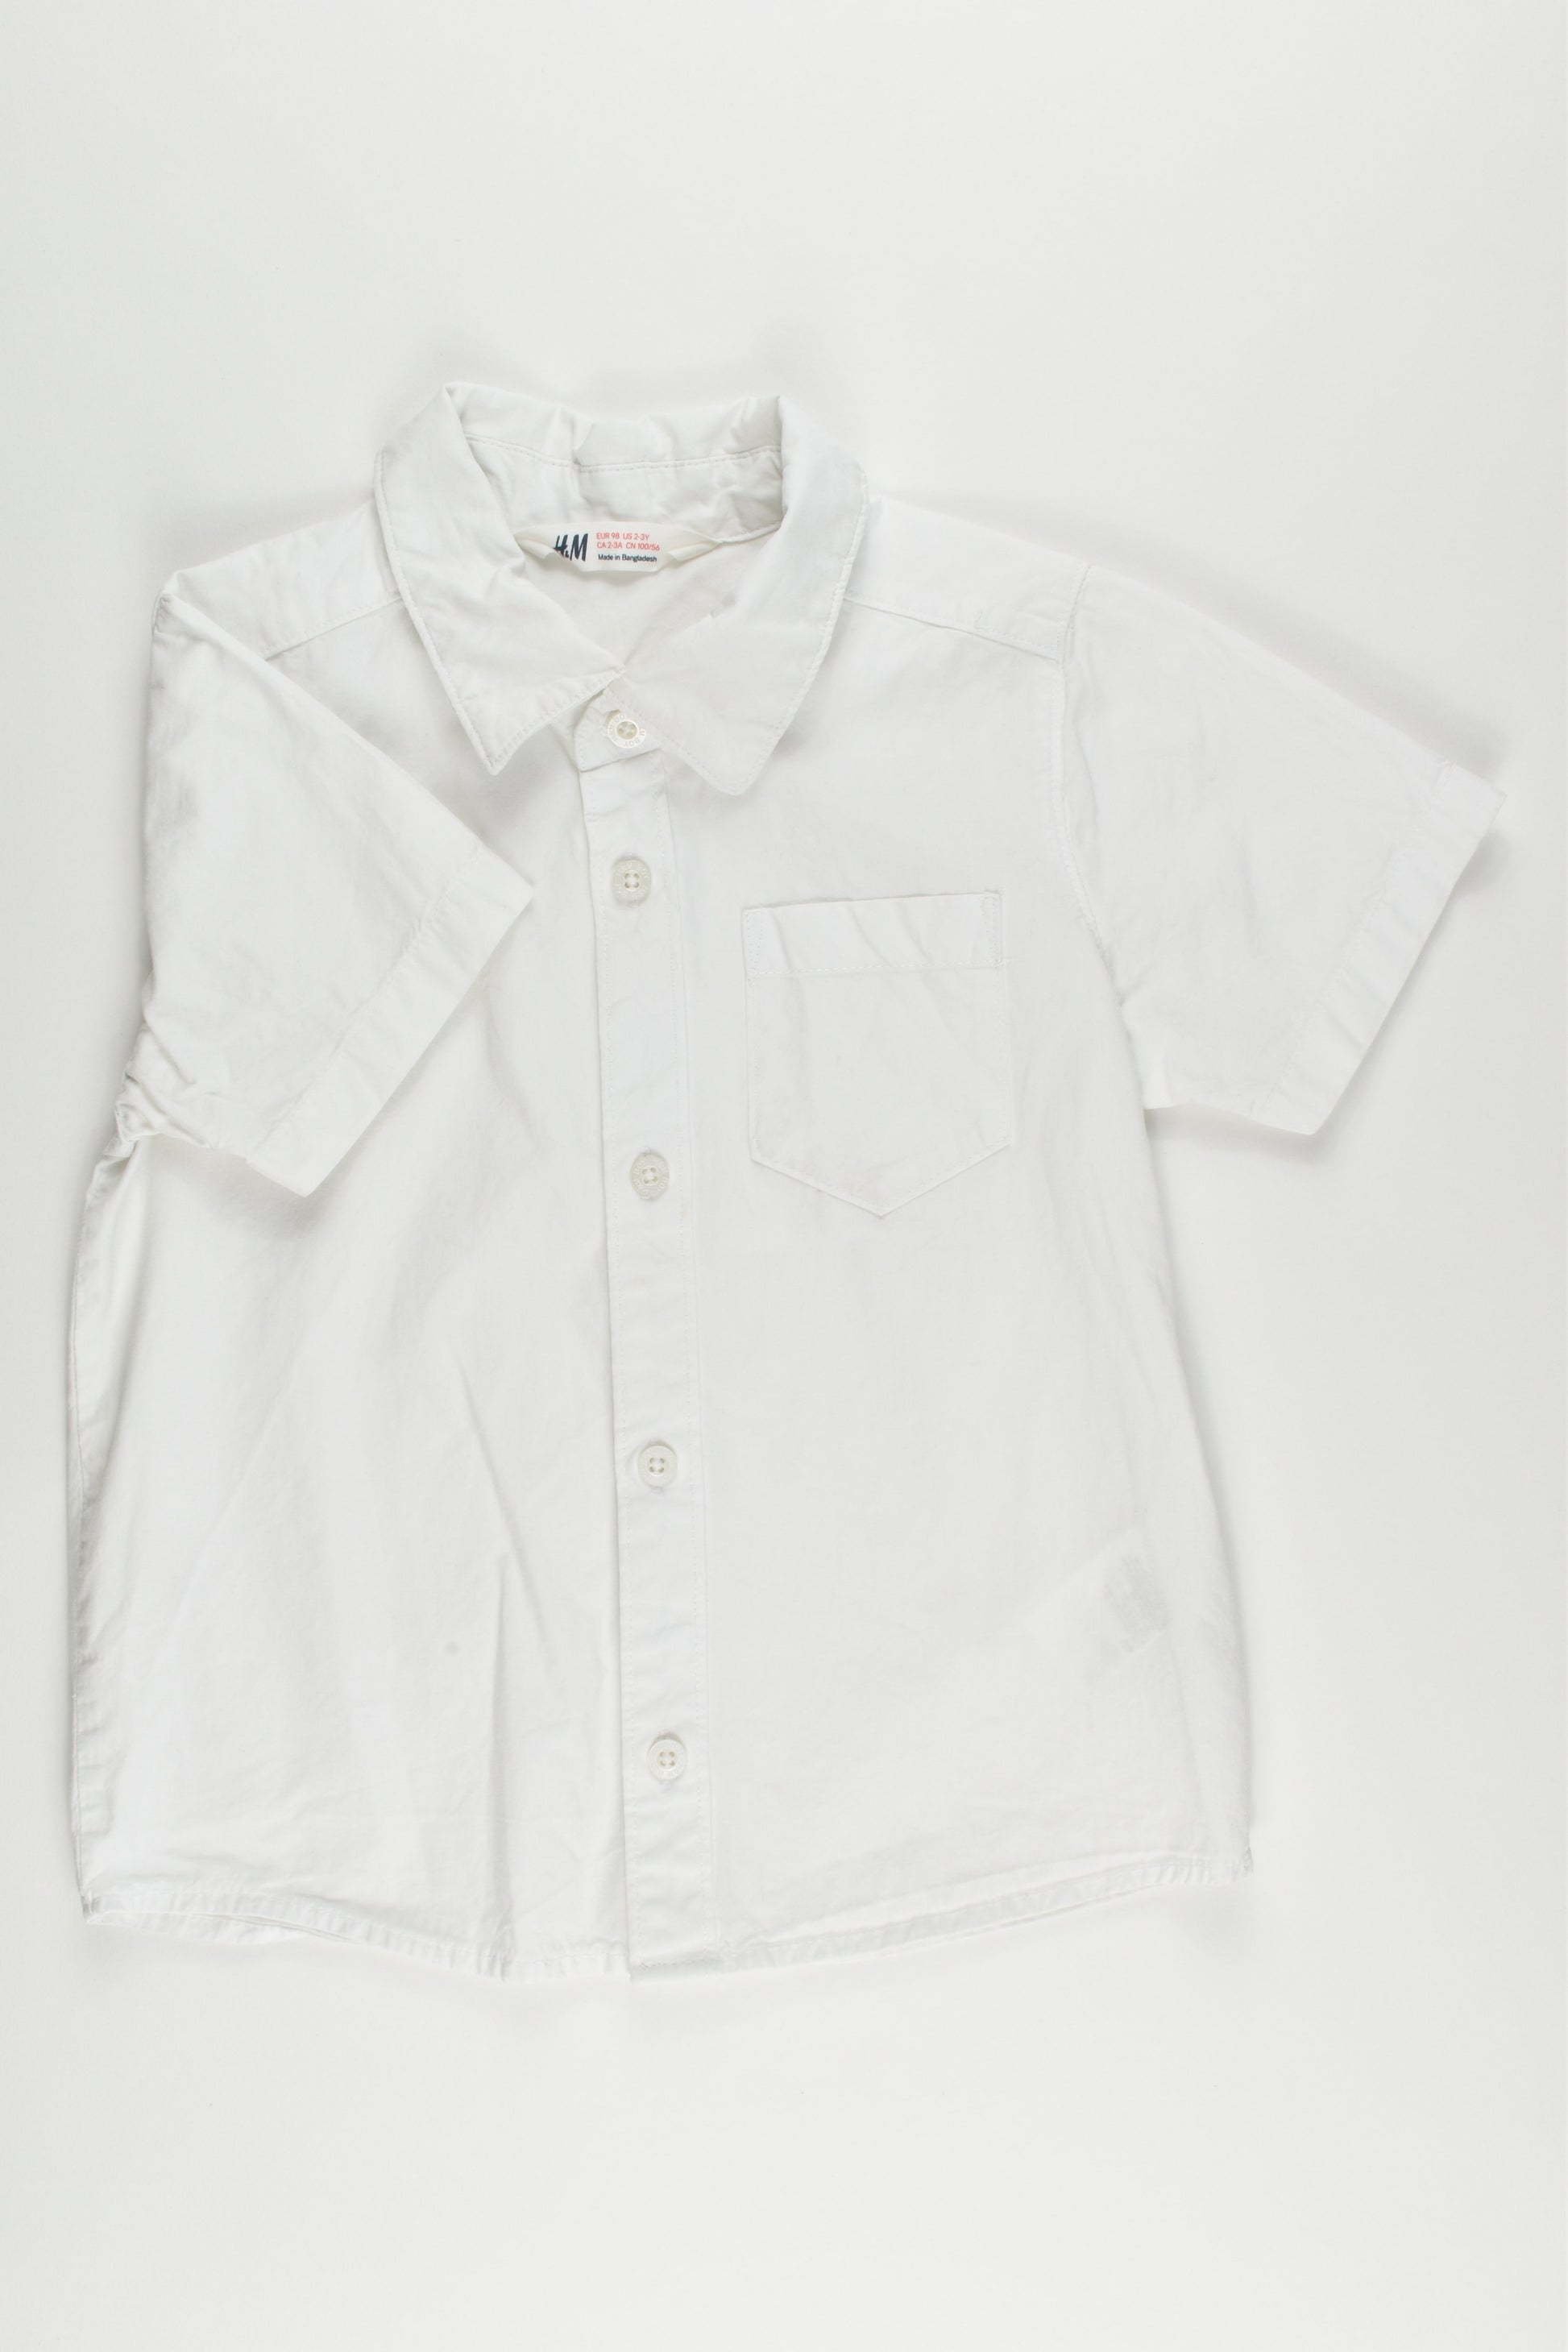 H&M Size 2-3 (98 cm) Shirt